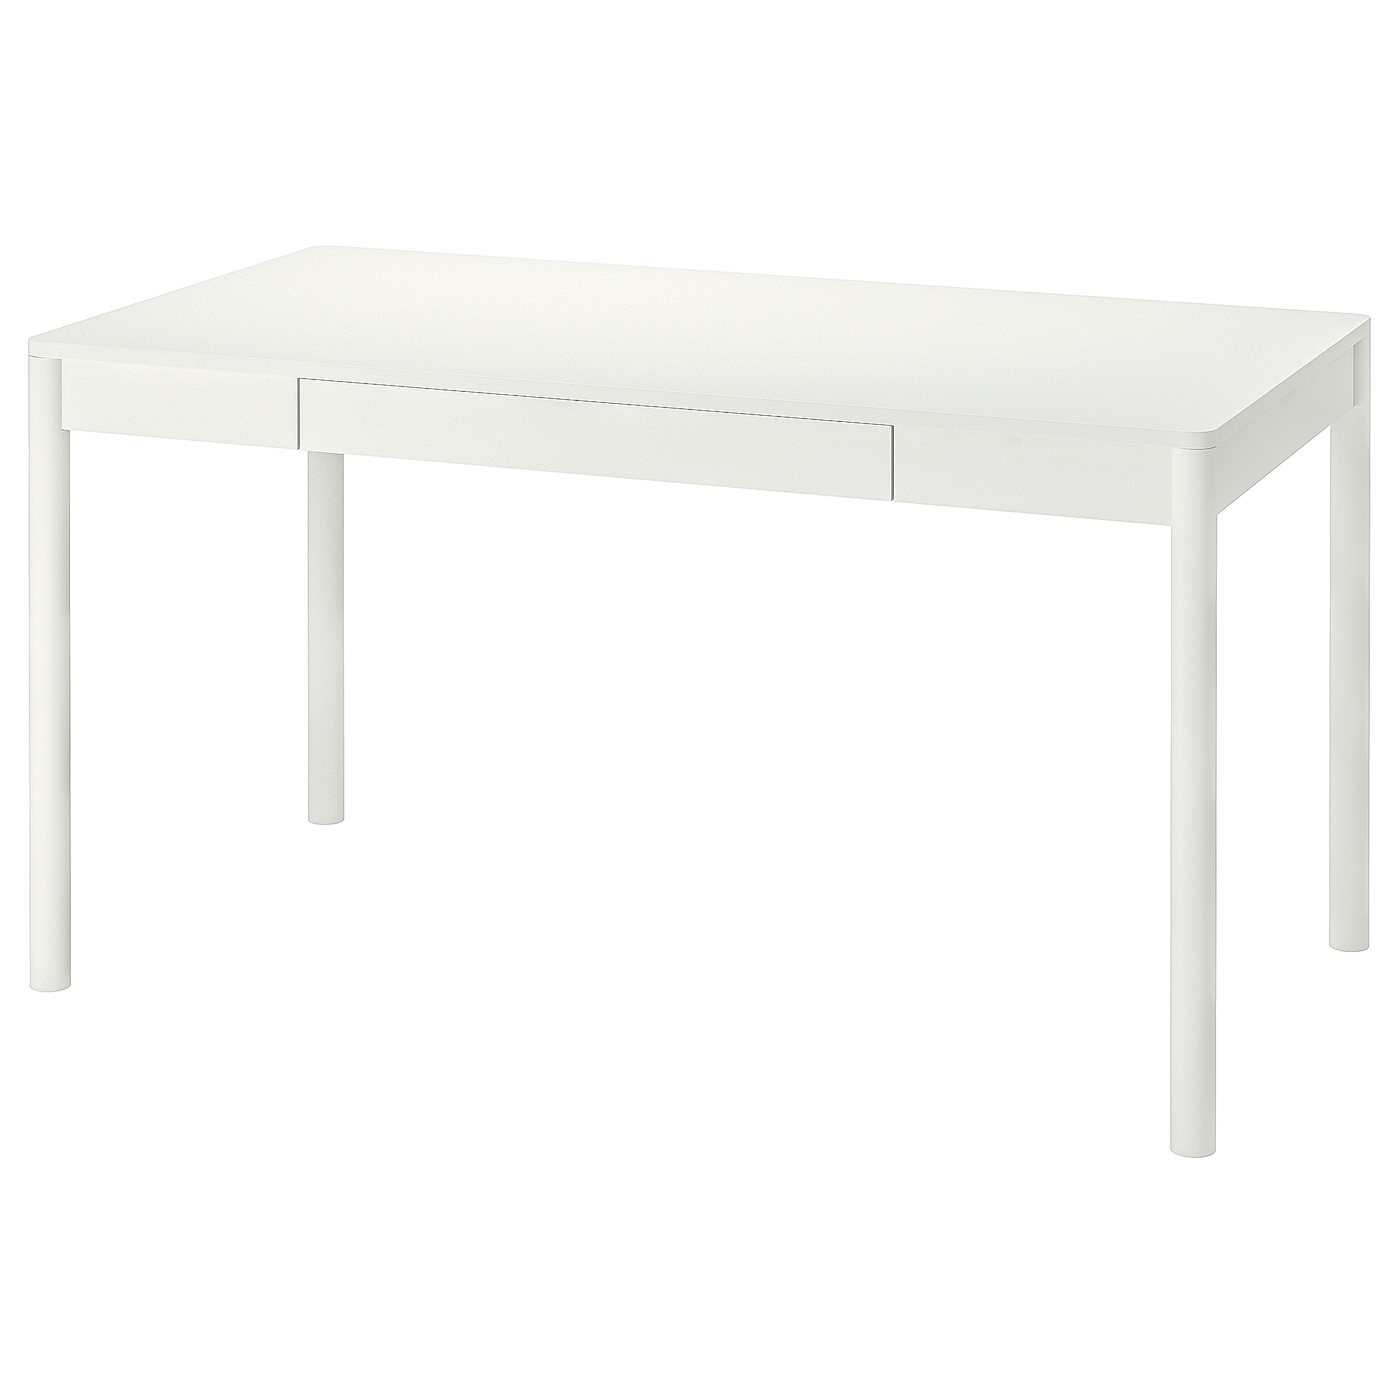 Письменный стол - IKEA TONSTAD, 140x75 см, белый, ТОНСТАД ИКЕА